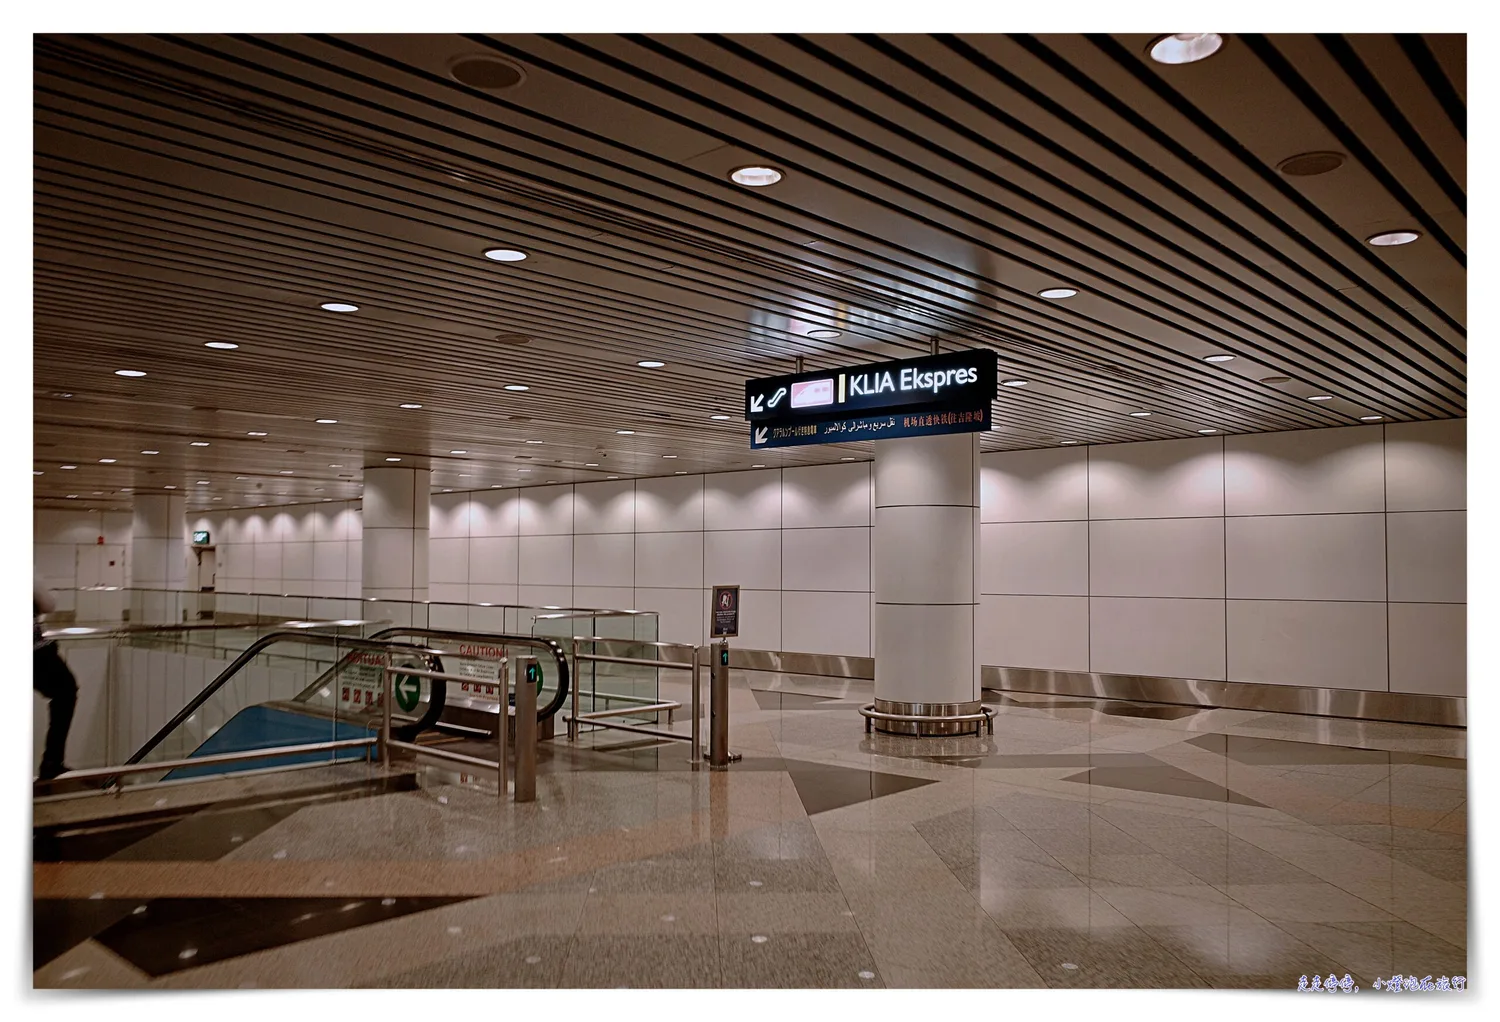 吉隆坡國際機場KLIA2，更多平價餐廳、以及超級專業的泰式按摩店